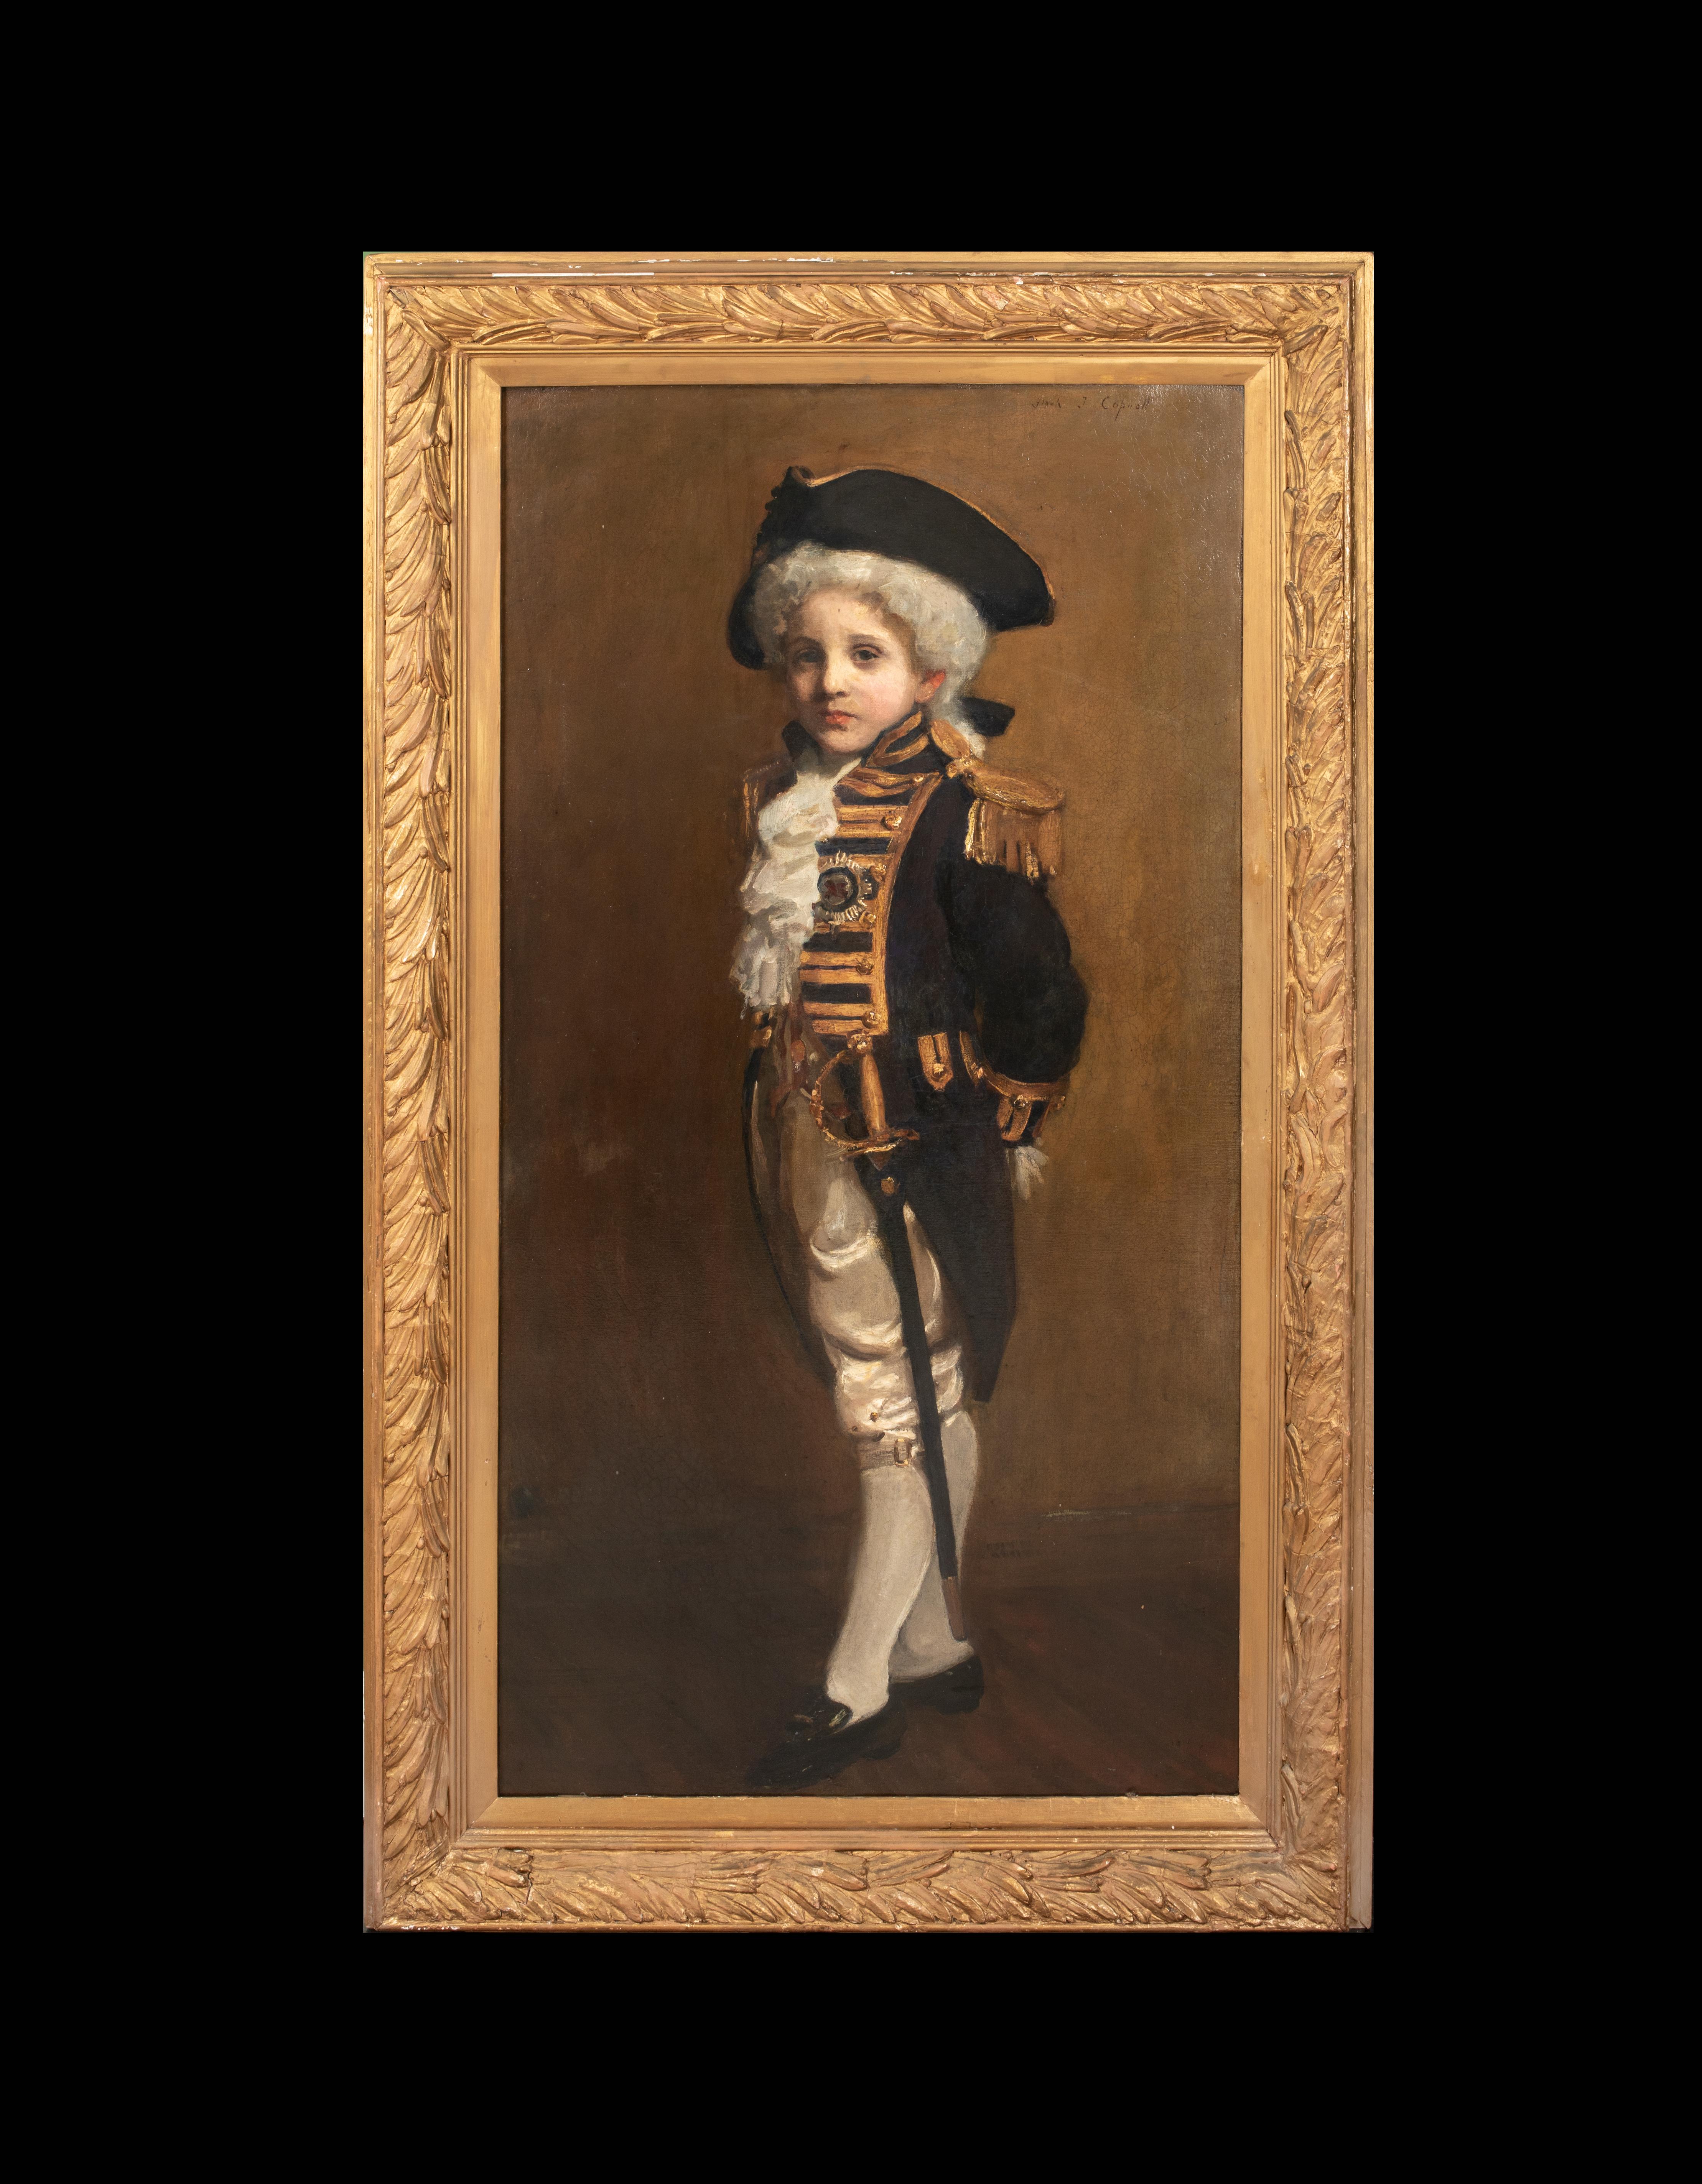  Portrait d'un enfant en Lord Nelson, 19e siècle   FRANK THOMAS COPNALL - Painting de Unknown